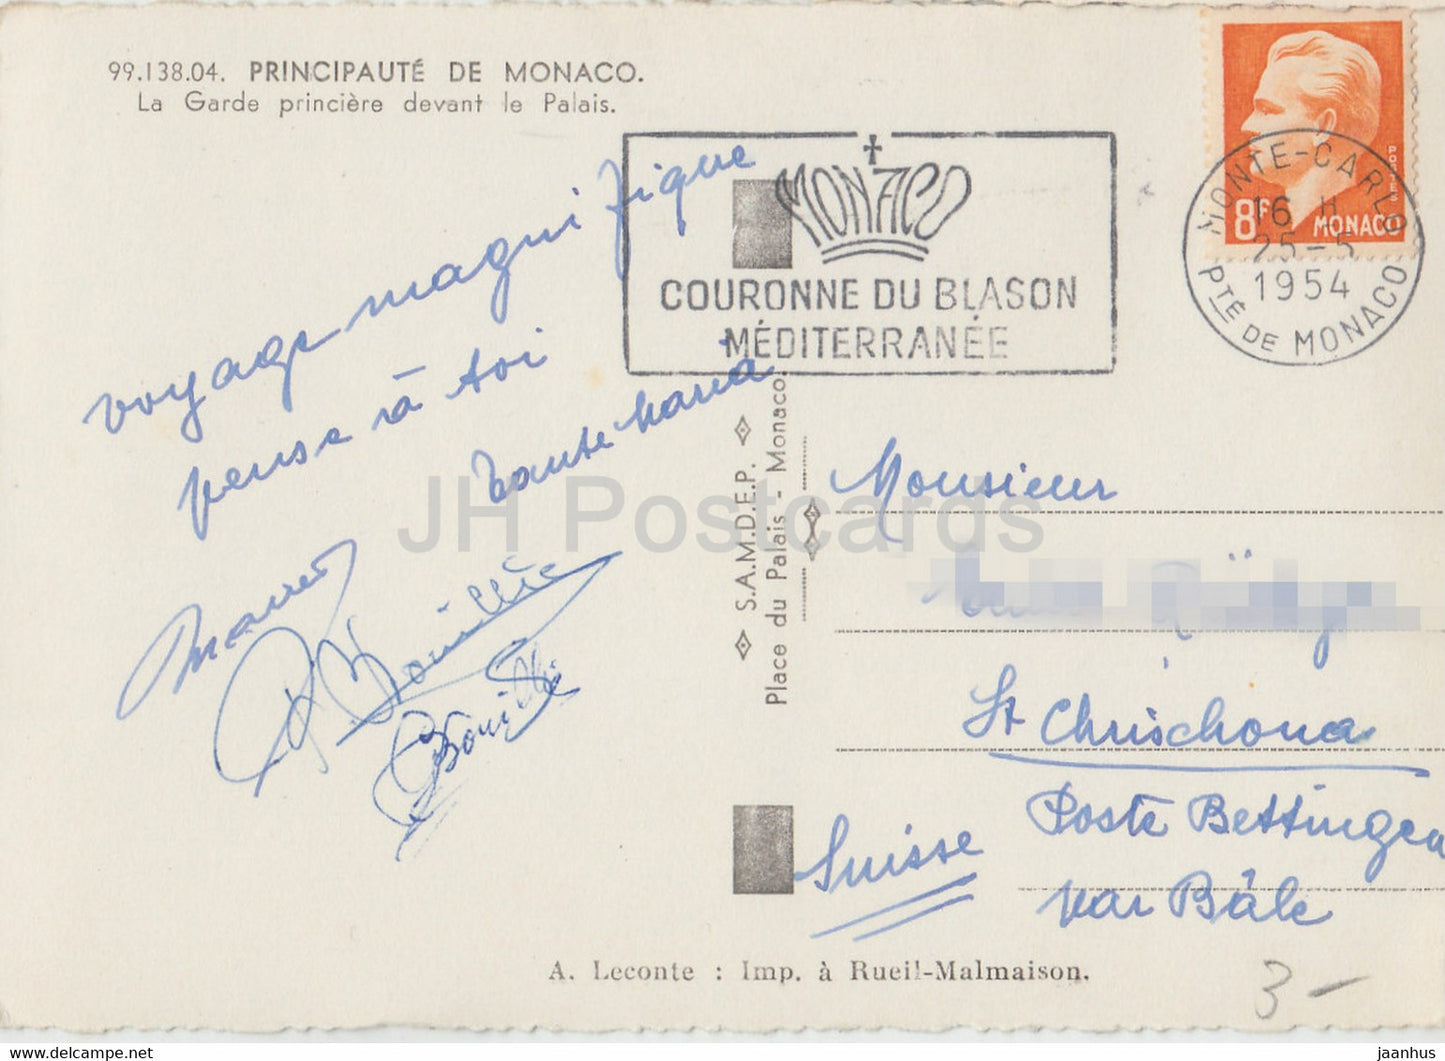 La Garde princiere devant le Palais - old postcard - 1954 - Monaco - used